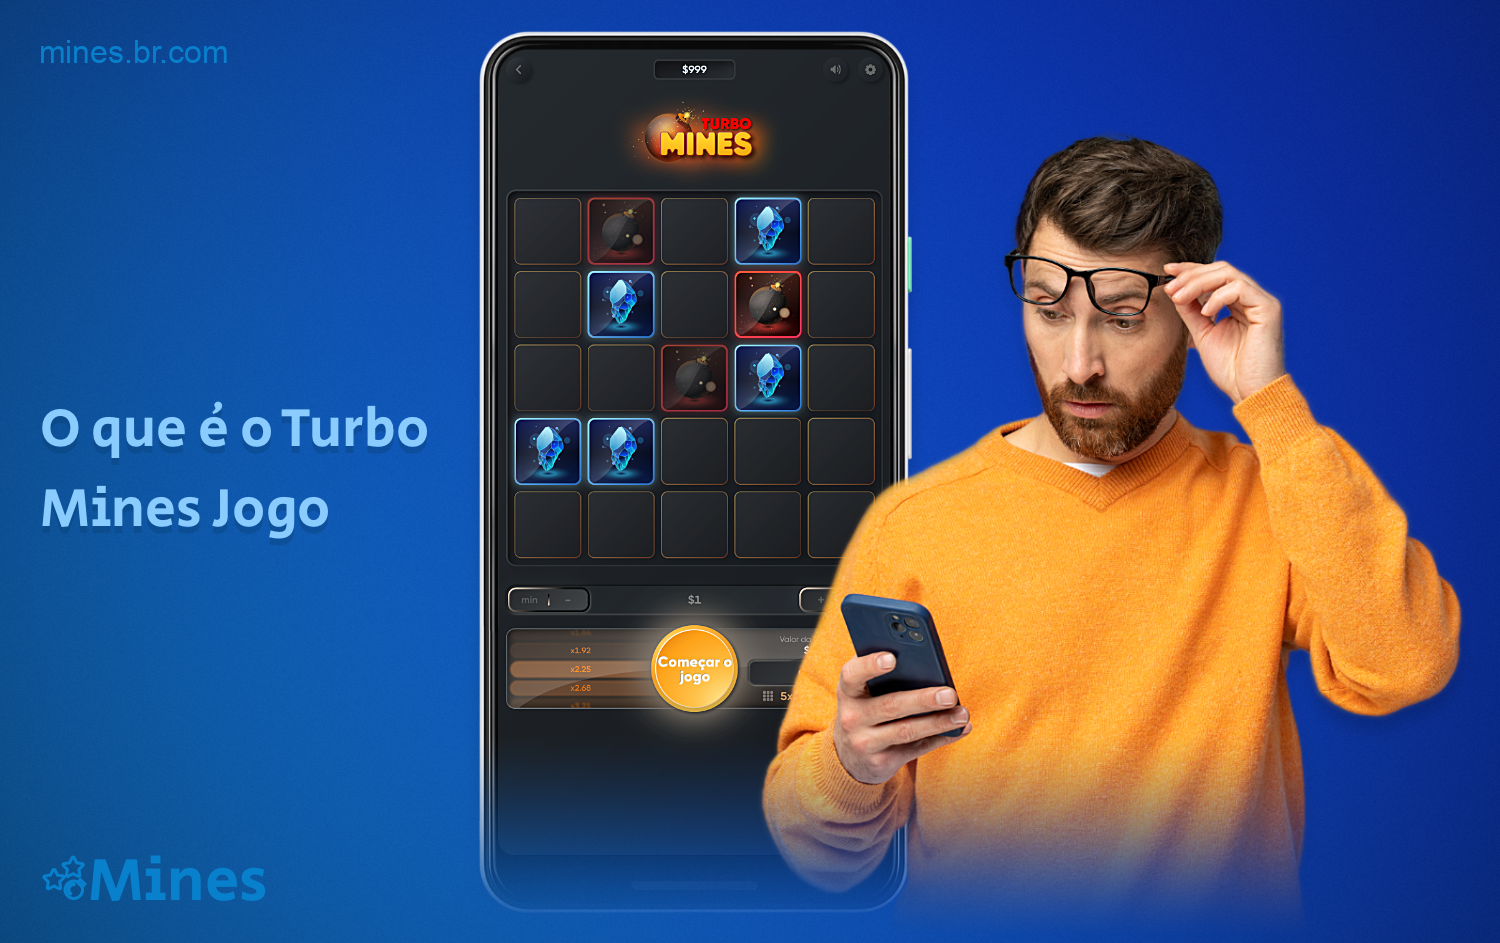 O jogo Turbo Mines é uma variação de um jogo muito conhecido que existe há muito tempo